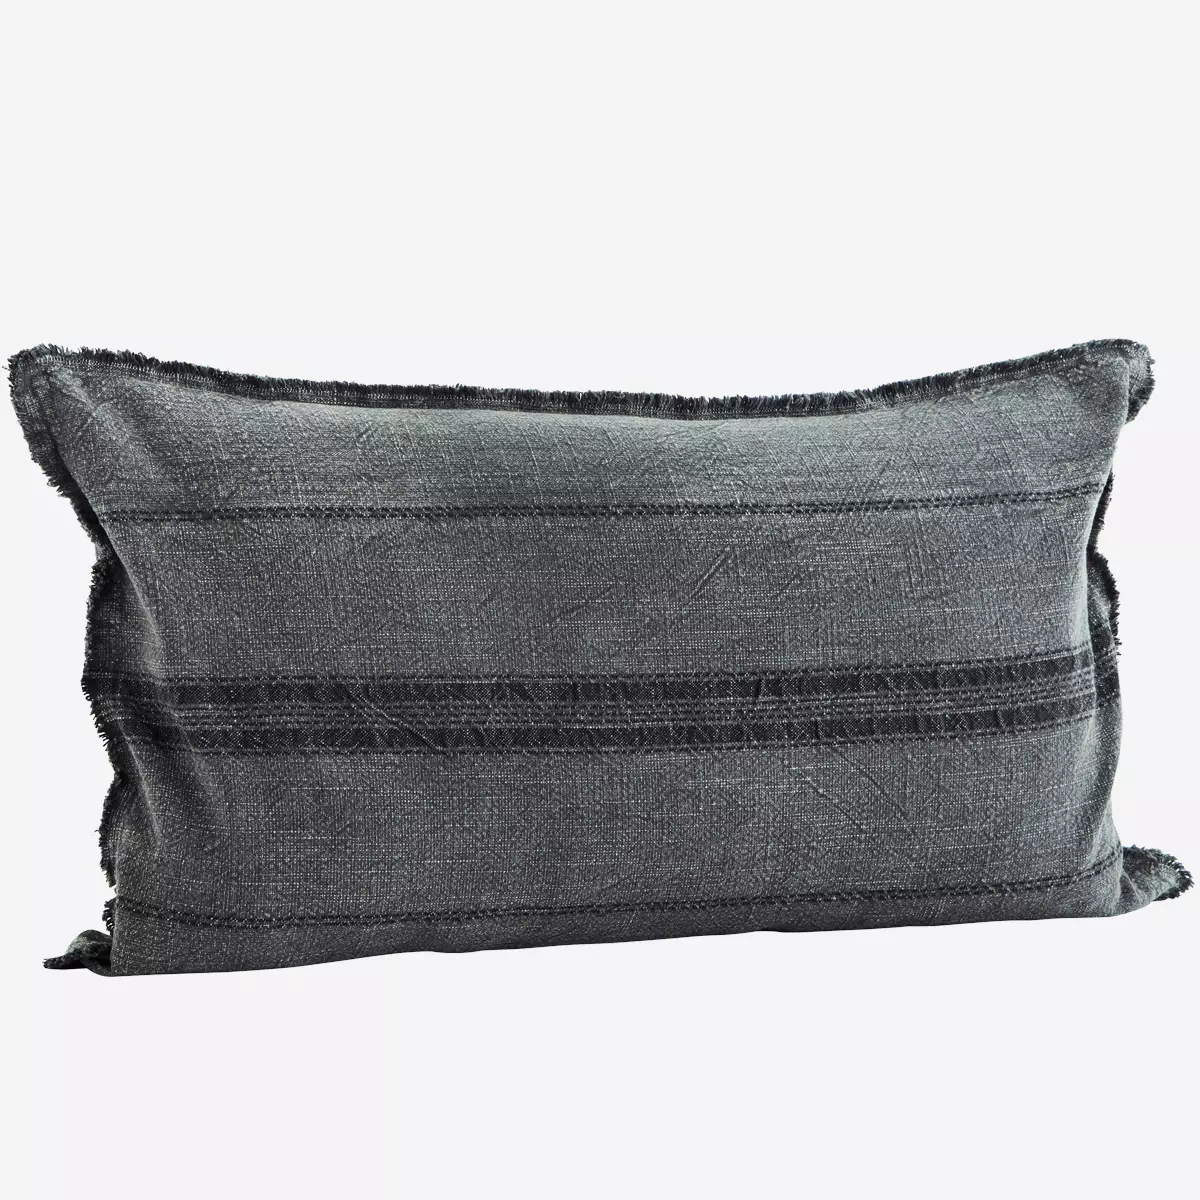 Striped Cushion Cover  - Dark Grey/Black